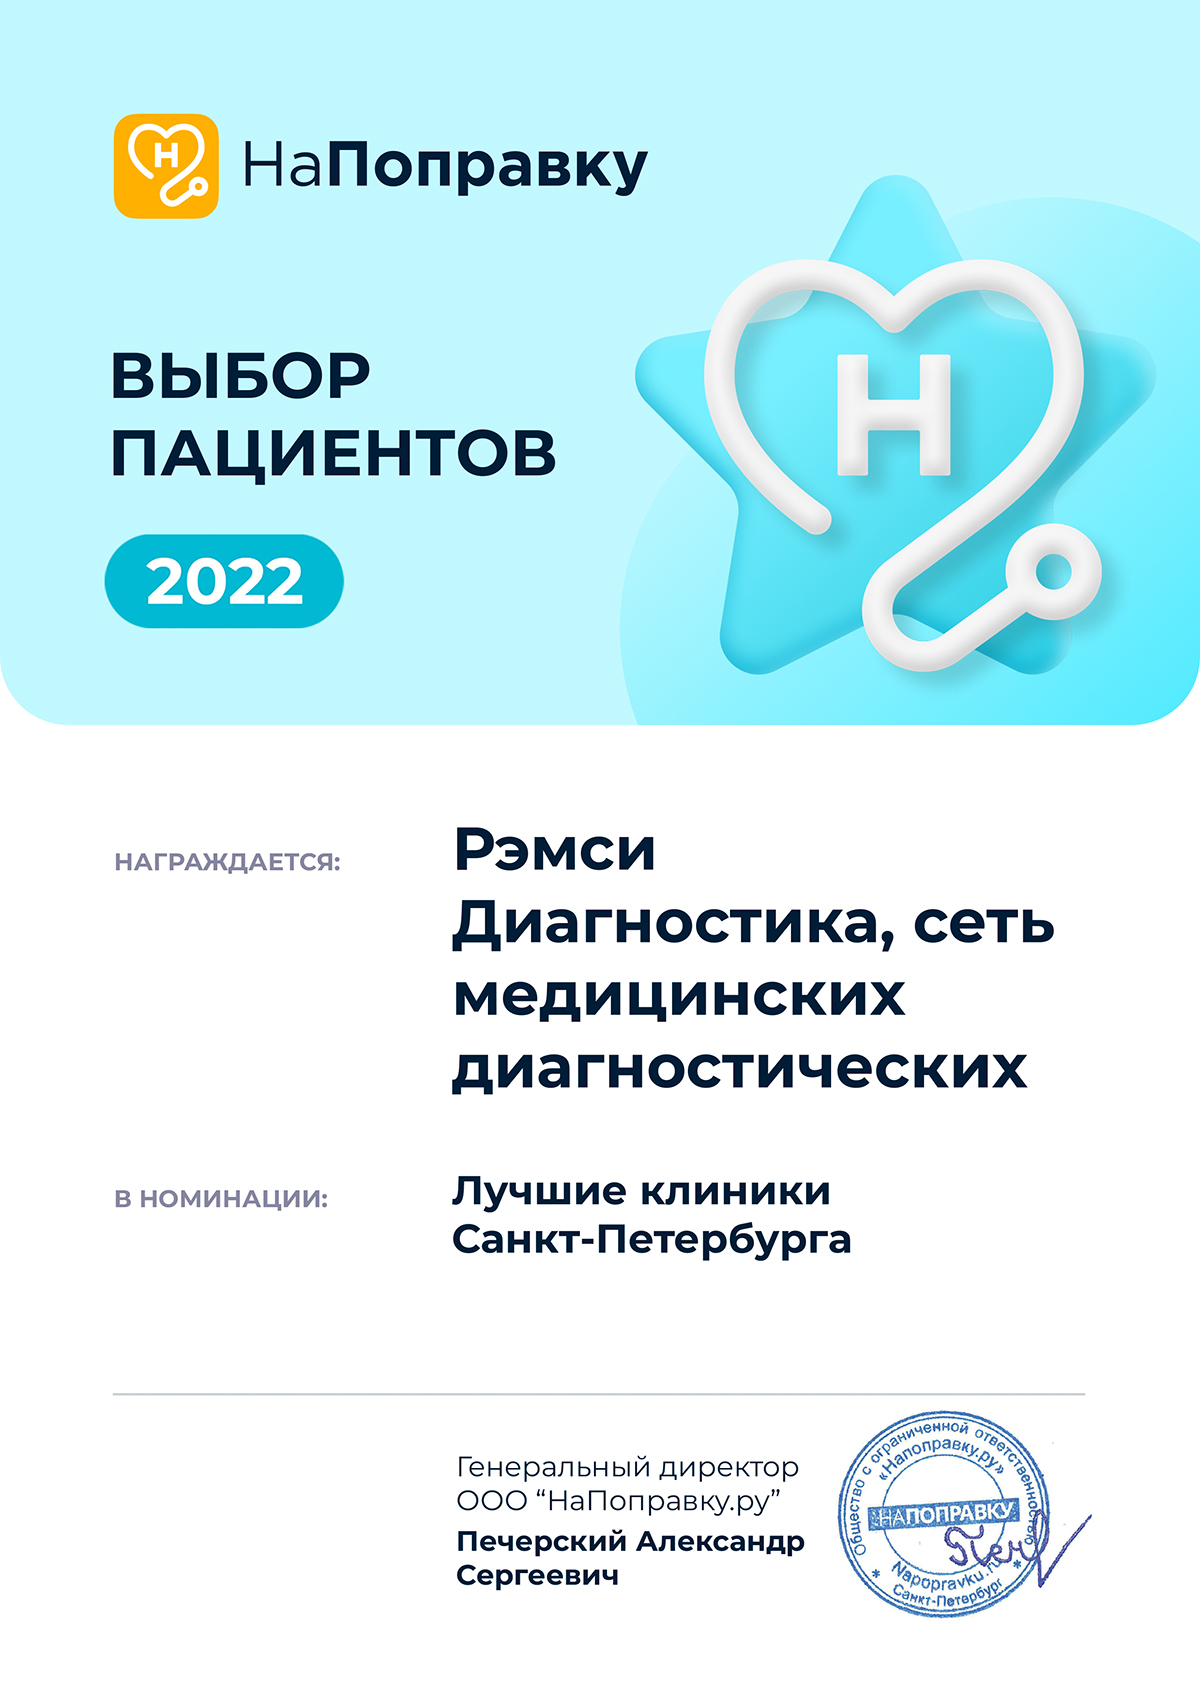 Сеть МДЦ “Рэмси Диагностика” стала победителем в номинации “Лучшие клиники Санкт-Петербурга”